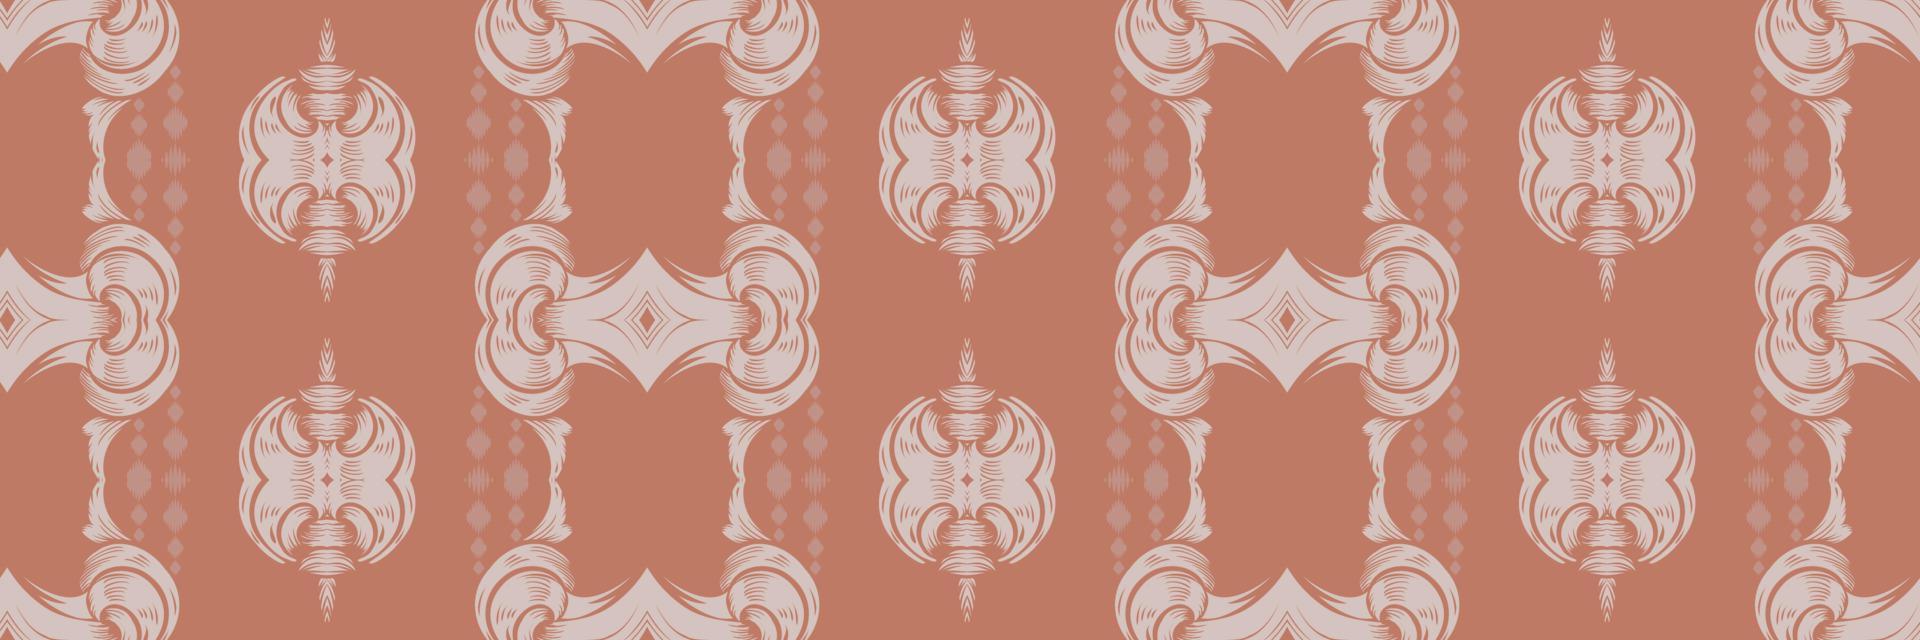 batik tessile motivo ikat tessuto senza soluzione di continuità modello digitale vettore design per Stampa saree Kurti Borneo tessuto confine spazzola simboli campioni festa indossare